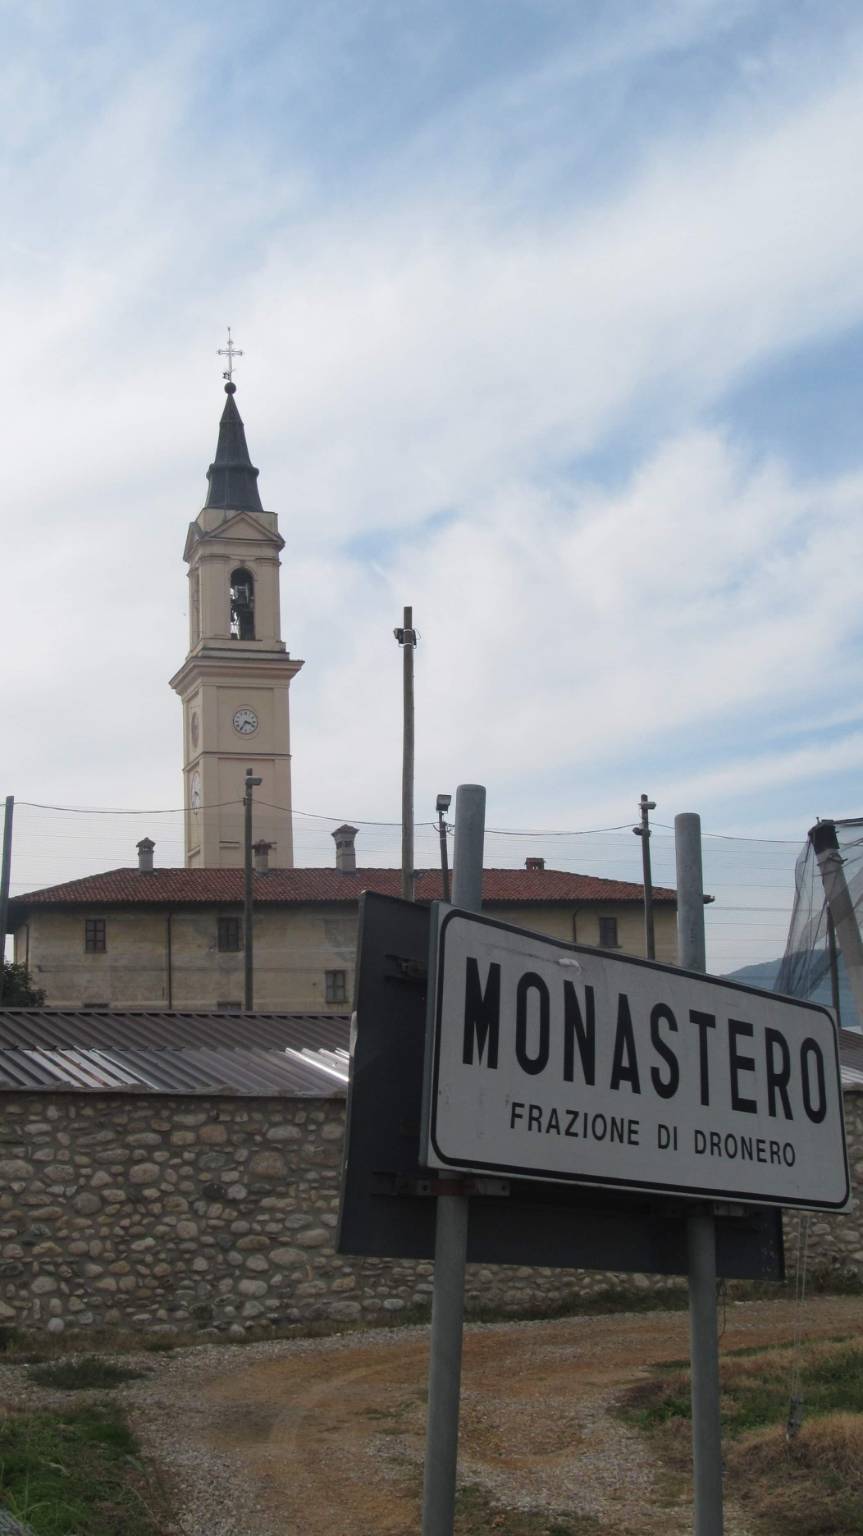 Monastero di Dronero, rivive una delle più belle leggende medievali